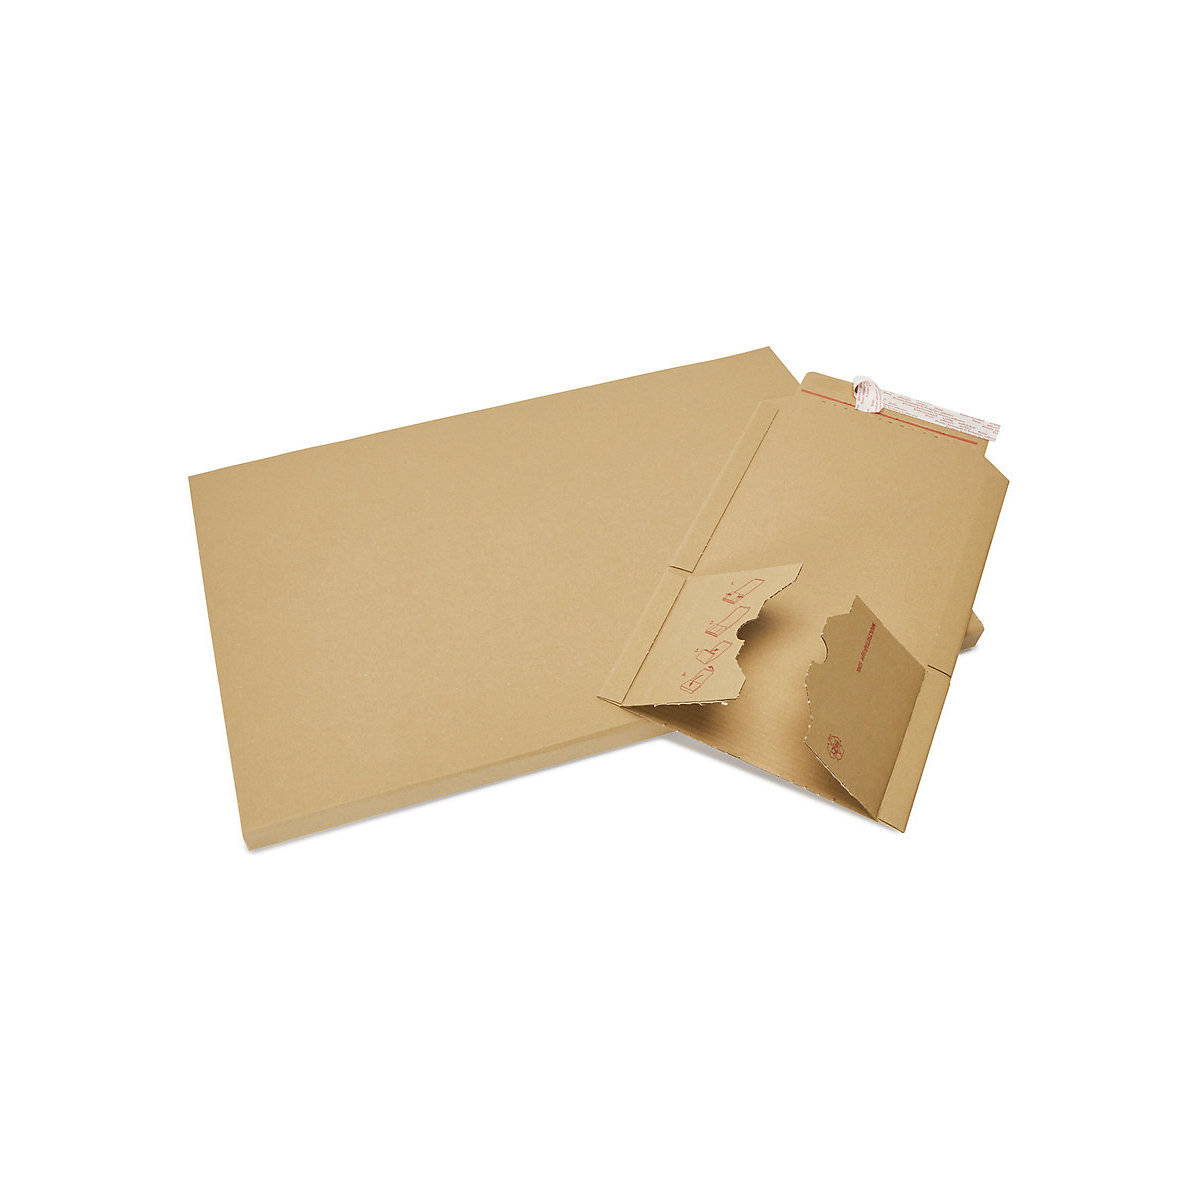 Imballaggio per libri Multistar – flow, marrone, lungh. x largh. 217 x 155 mm, a partire da 500 pz.-1